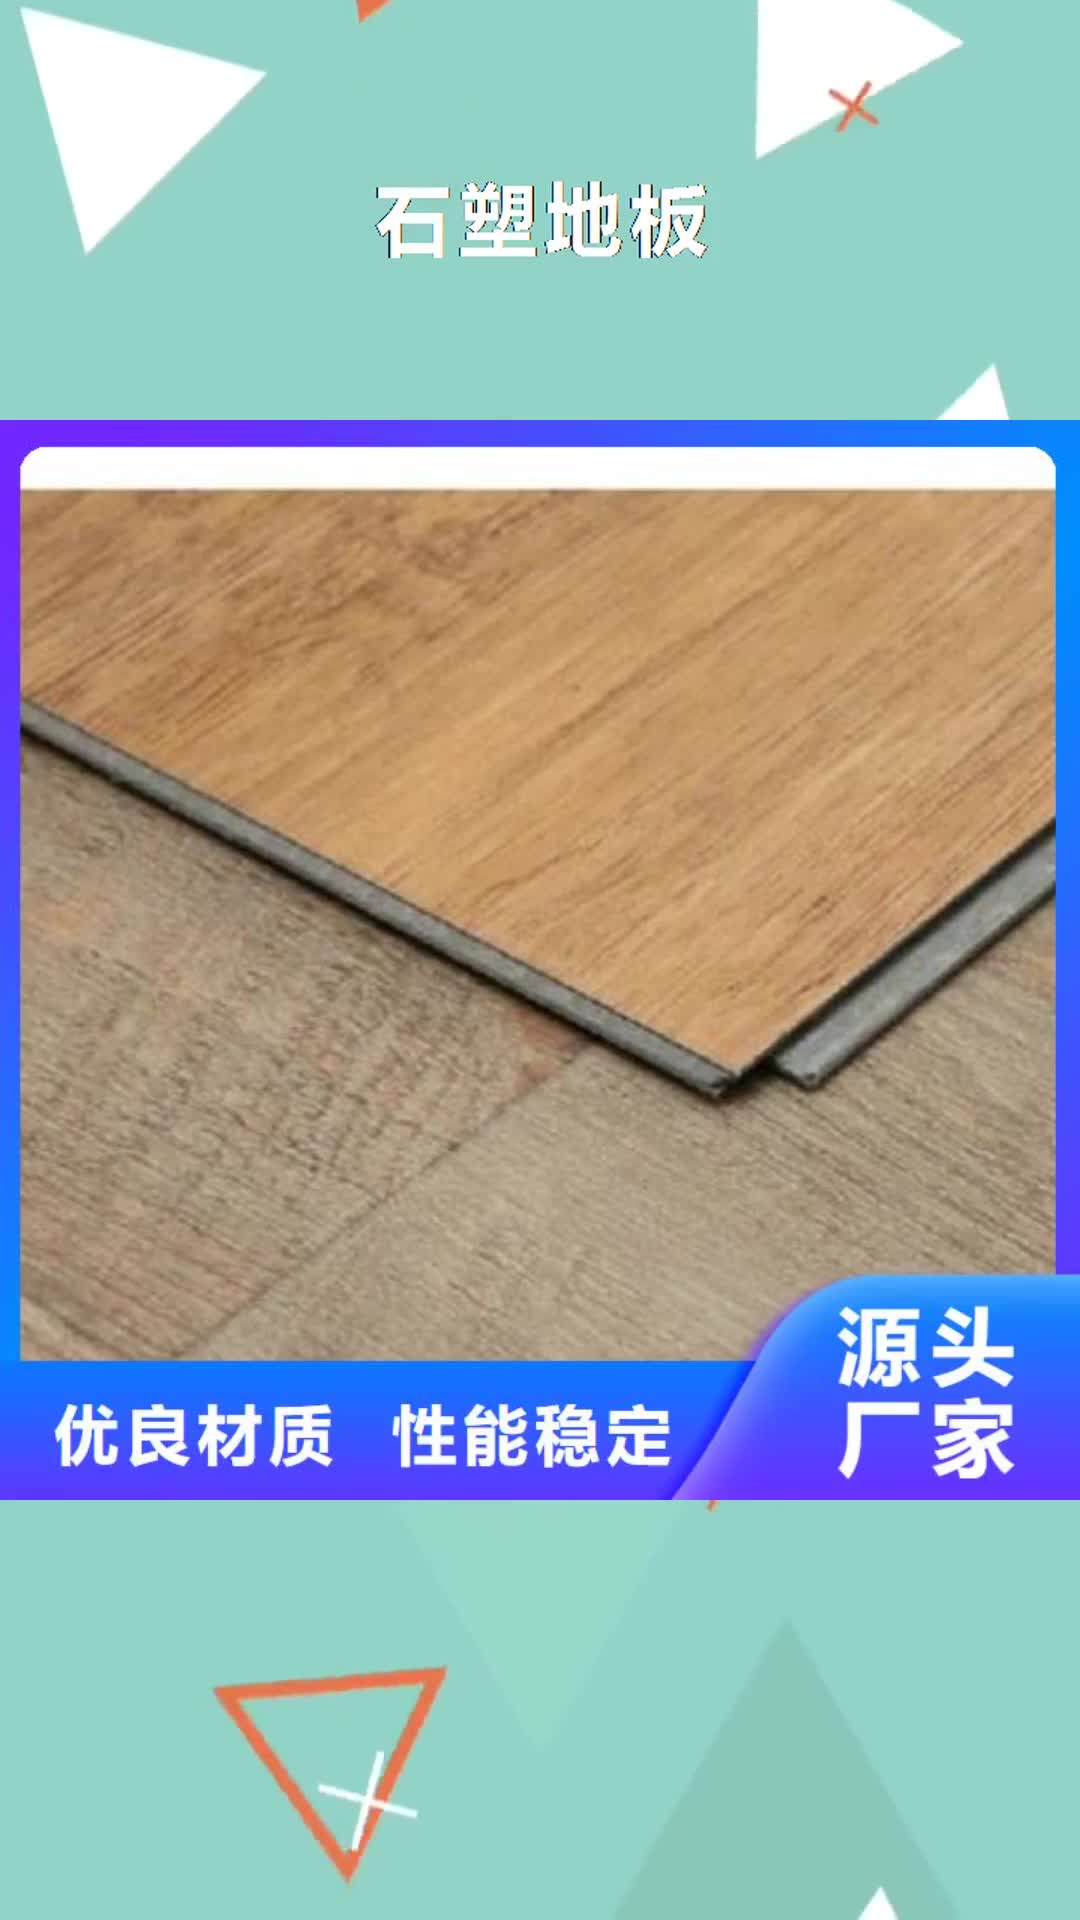 海东【石塑地板】 铝单板专业生产设备